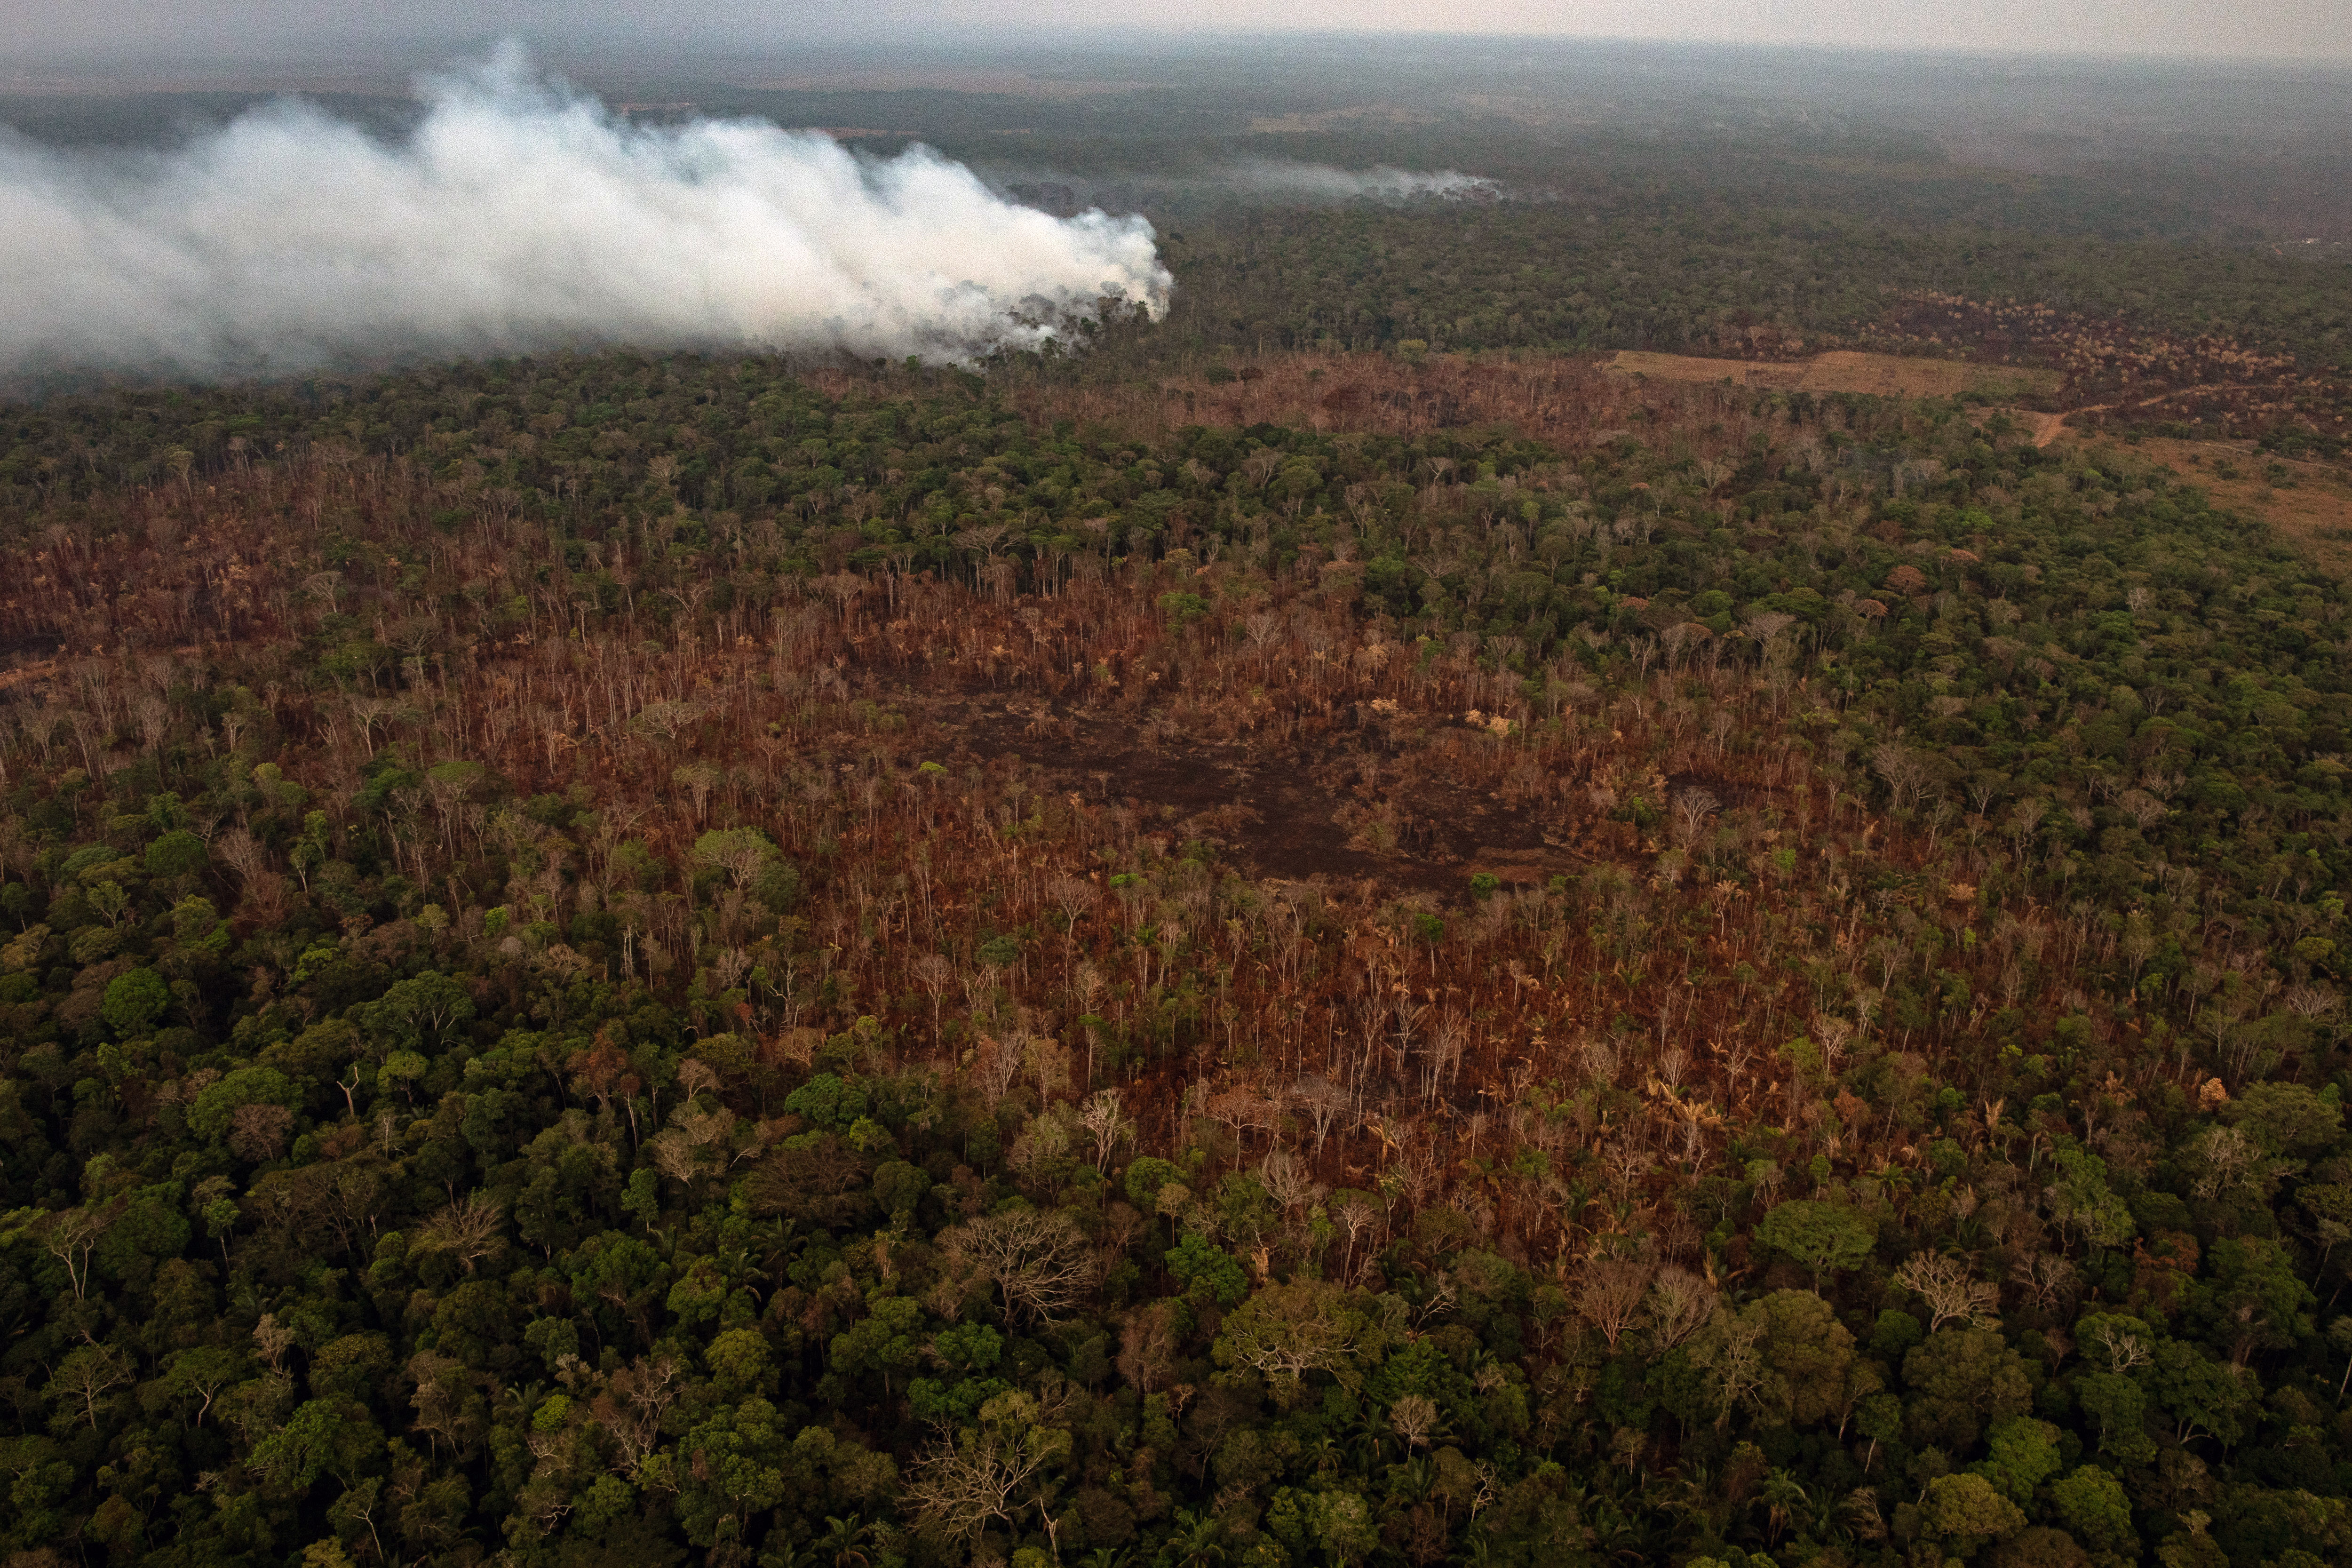 Una quema cerca de Porto Velho, en el estado de Rondonia en Brasil, el 26 de agosto de 2019 (Foto Prensa Libre: Victor Moriyama / The New York Times).